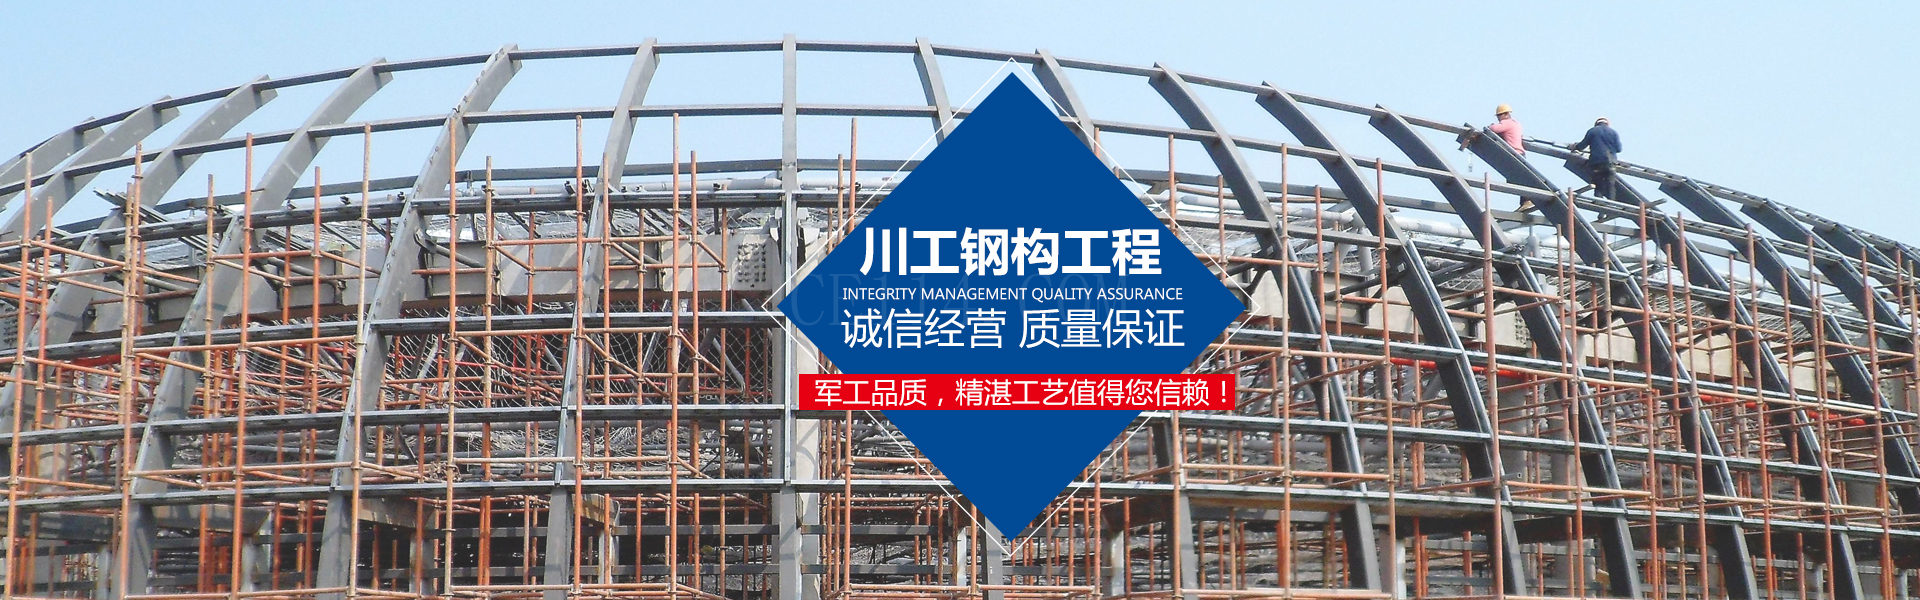 福建川工钢结构工程有限公司